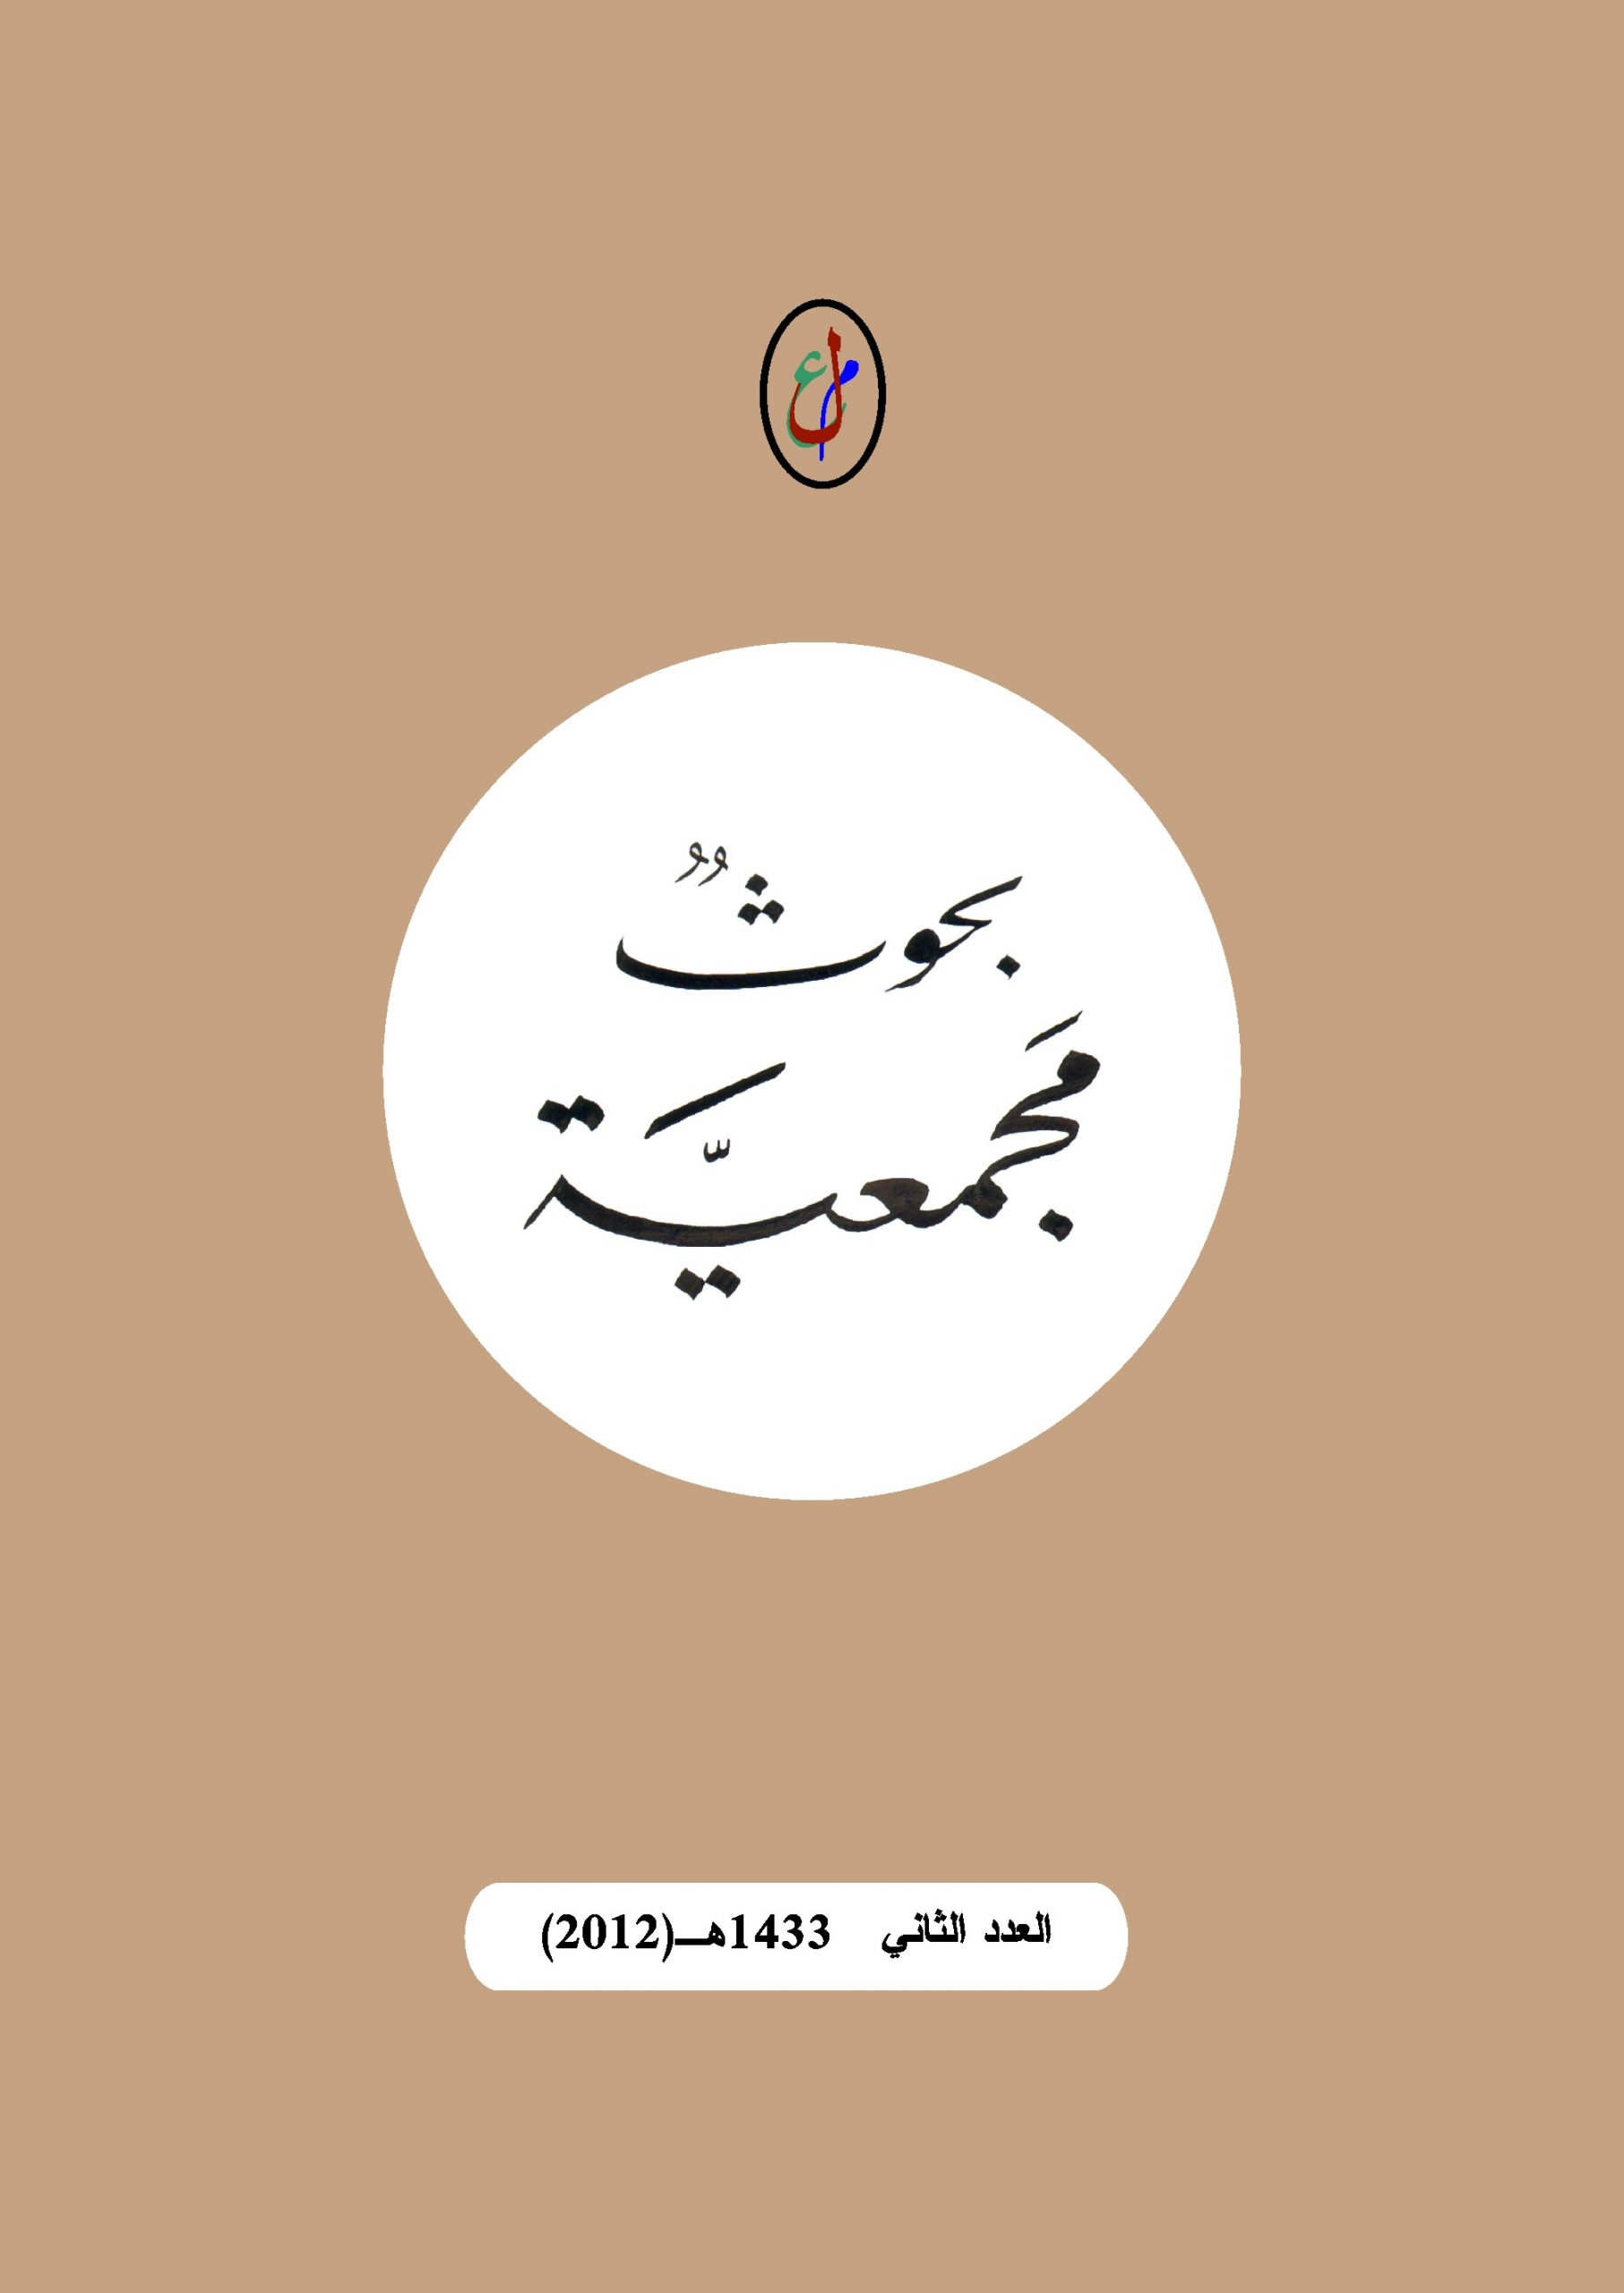 مجمع اللغة العربية الليبي / طرابلس - العدد الثاني  1433هـ  (2012)